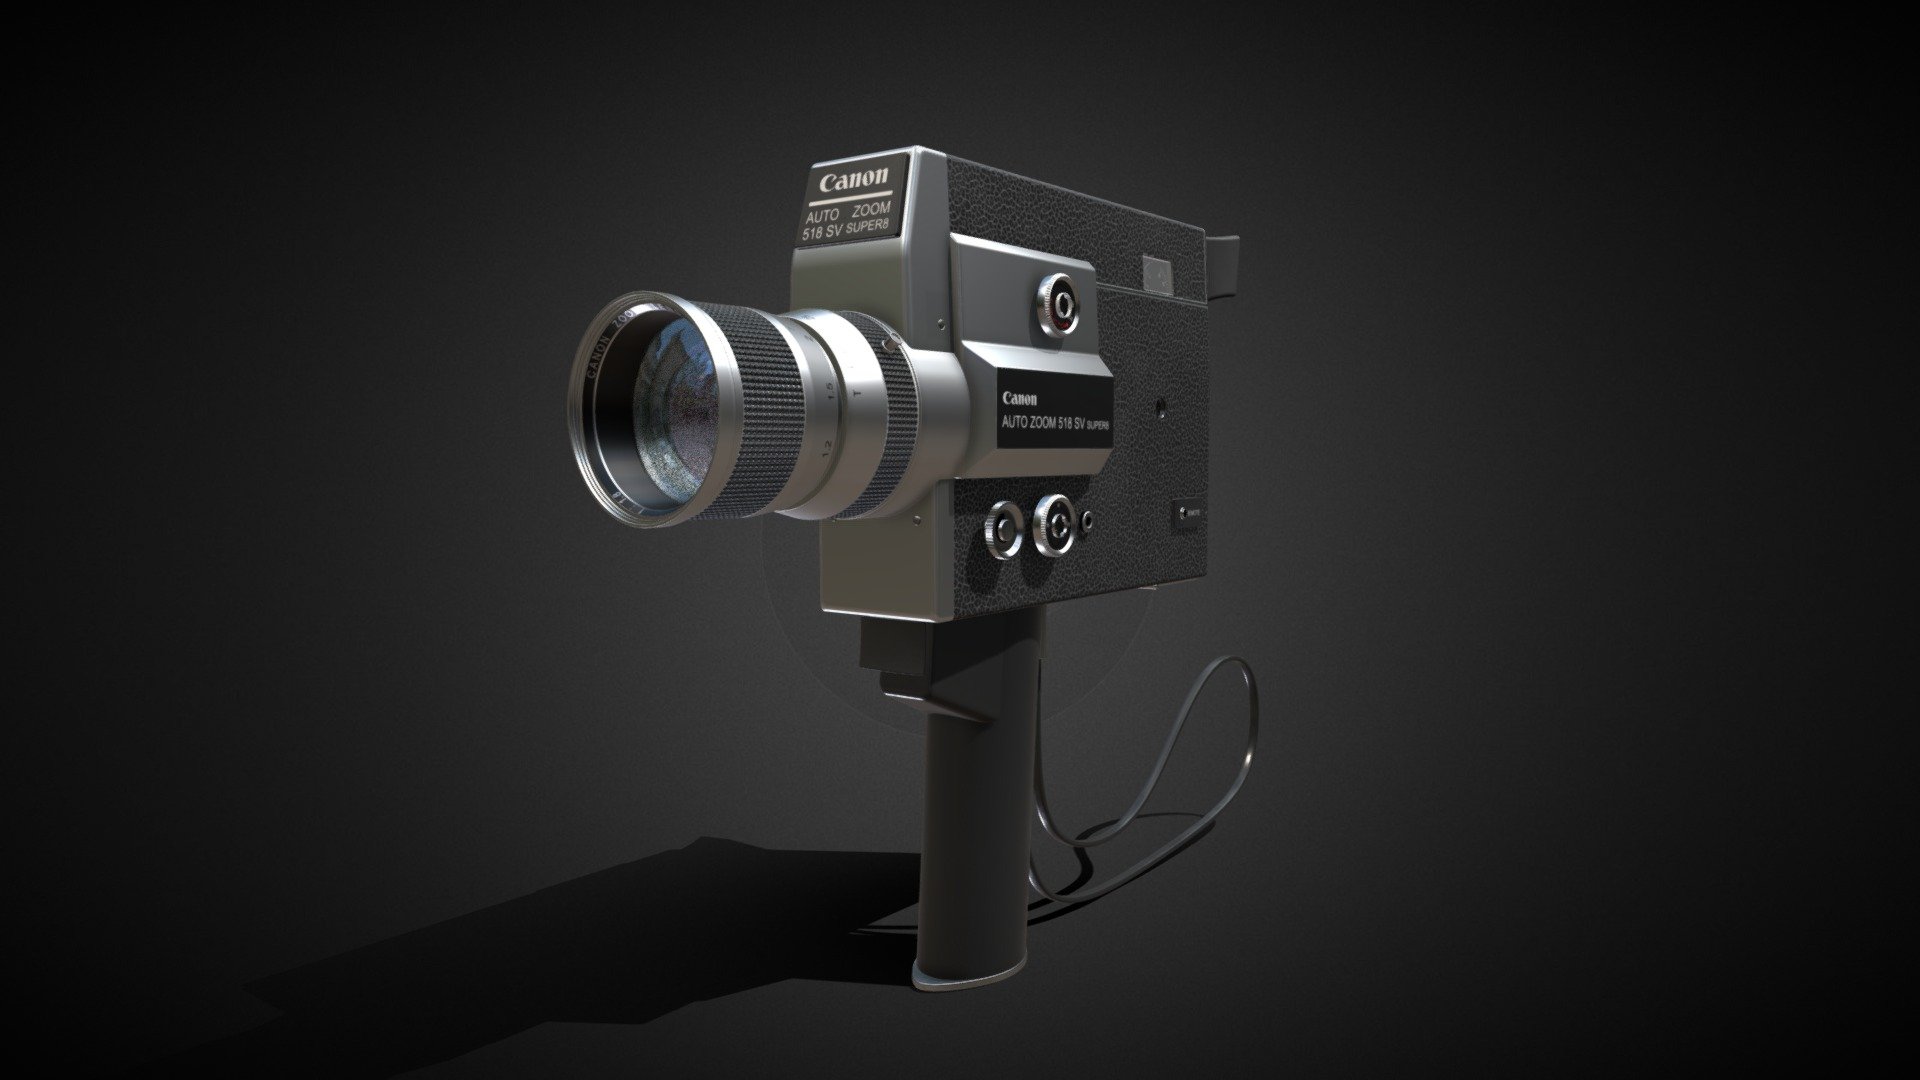 Canon Auto Zoom 518 SV Super 8 - 3D model by cyberreno (@cyberreno